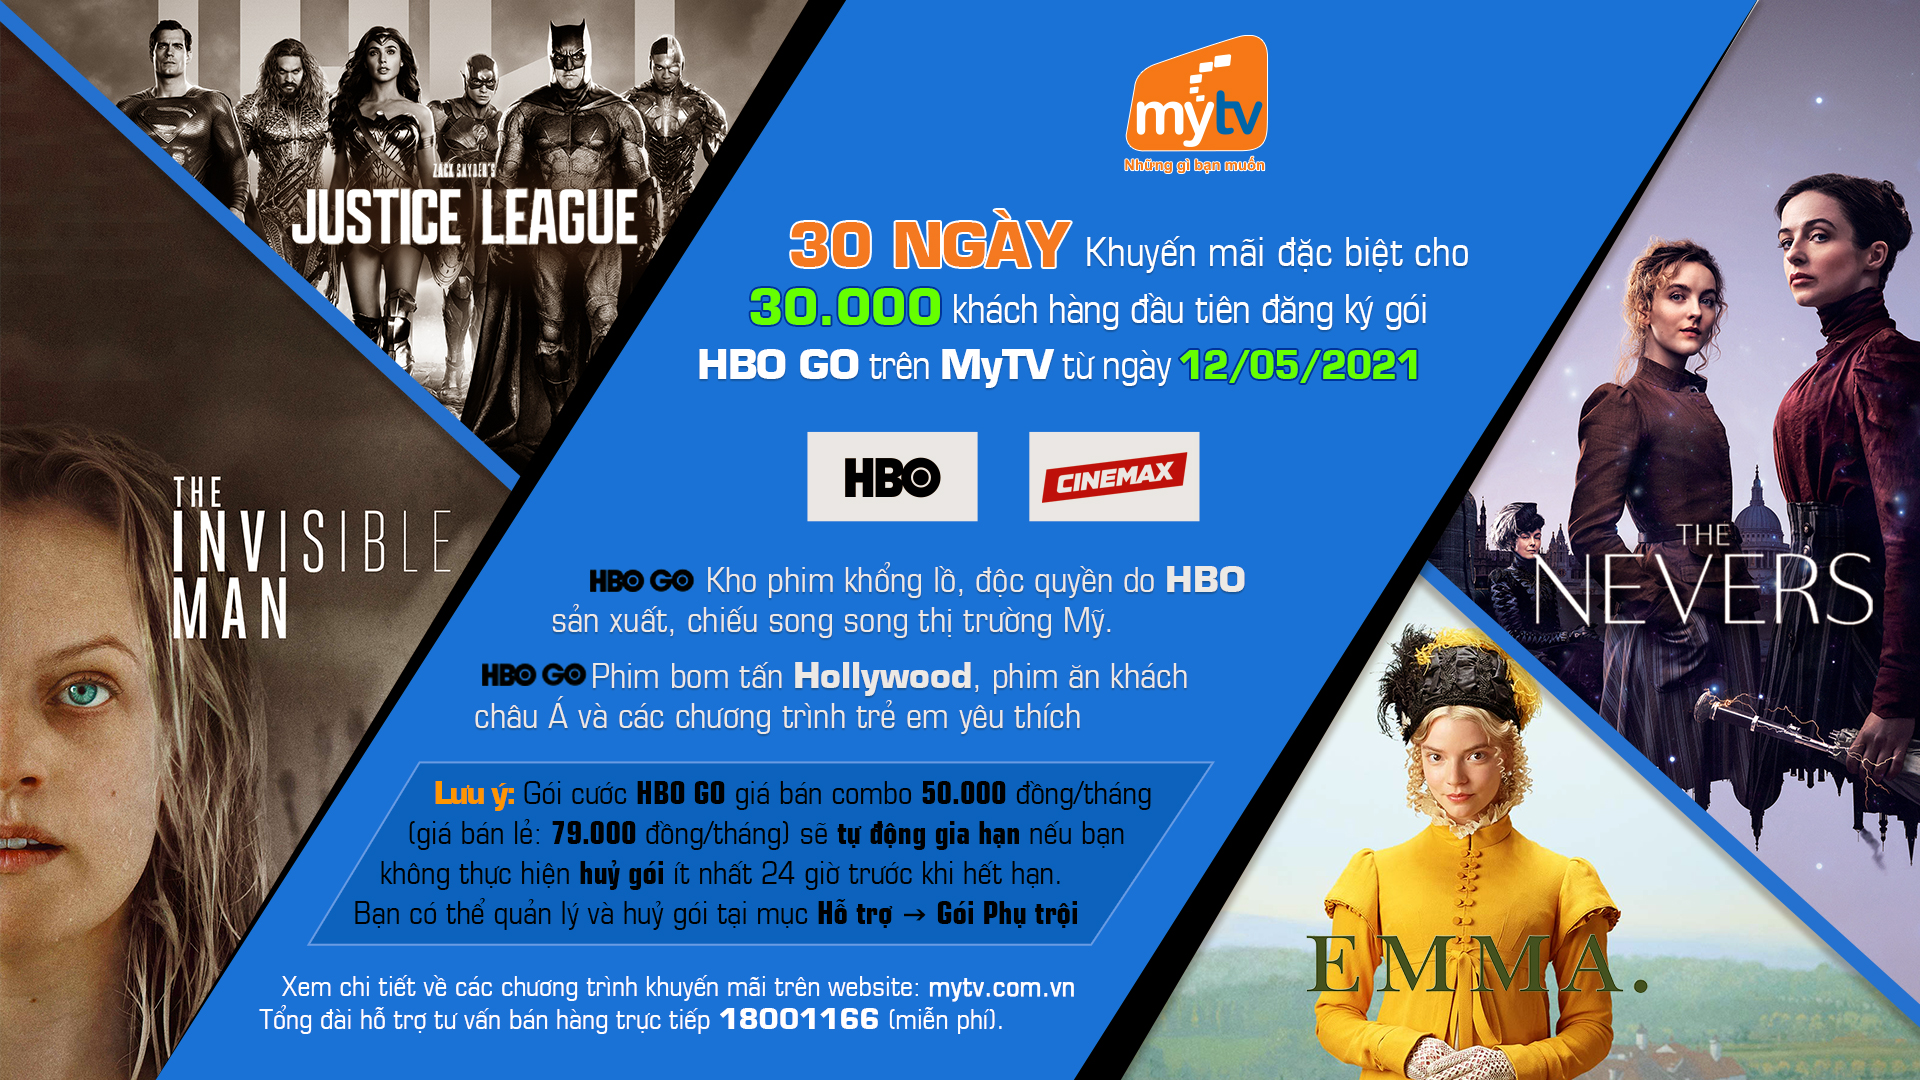 Công nghệ - Top phim điện ảnh và series phim đáng xem nhất của HBO GO trên Truyền hình MyTV (Hình 5).